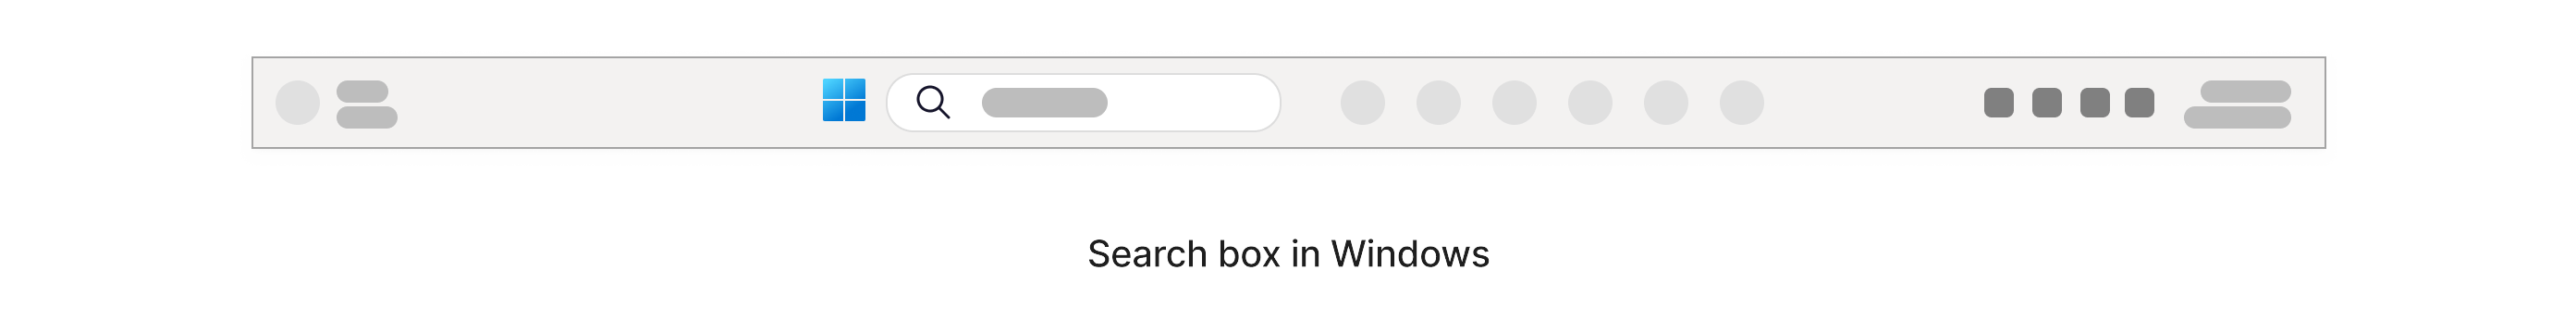 Casella di ricerca con un'icona di ingrandimento all'interno della barra delle applicazioni di Windows nella parte inferiore dello schermo.